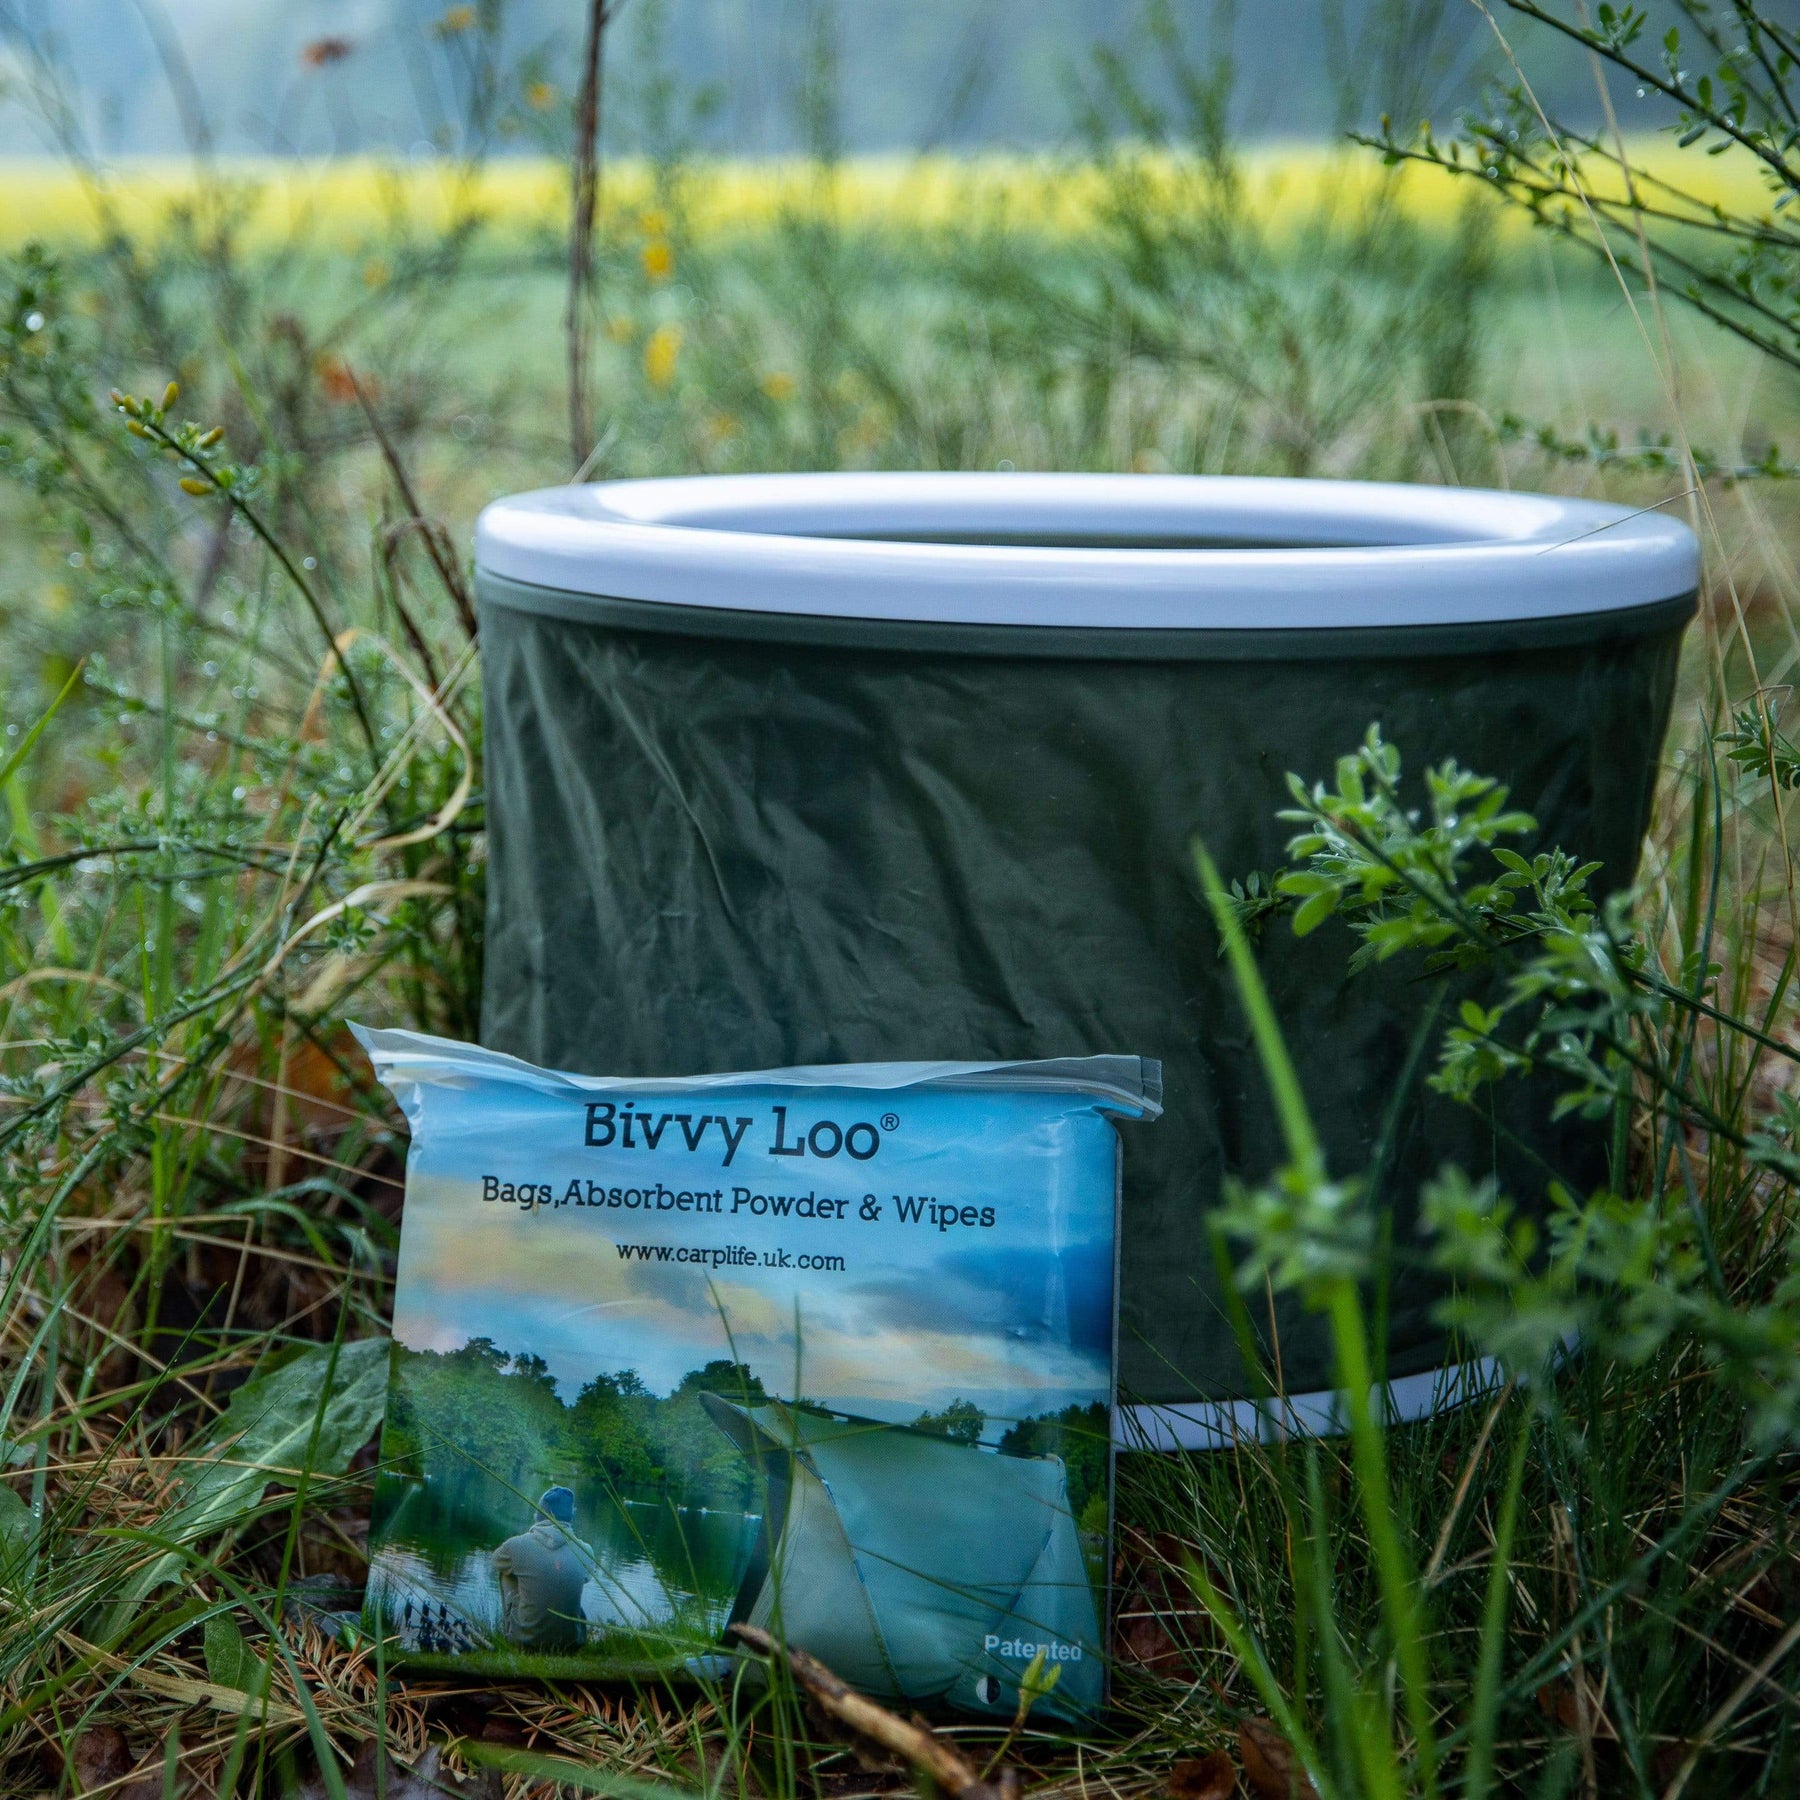 Bivvy Loo - Camping Toilette (klappbar) - günstig kaufen –